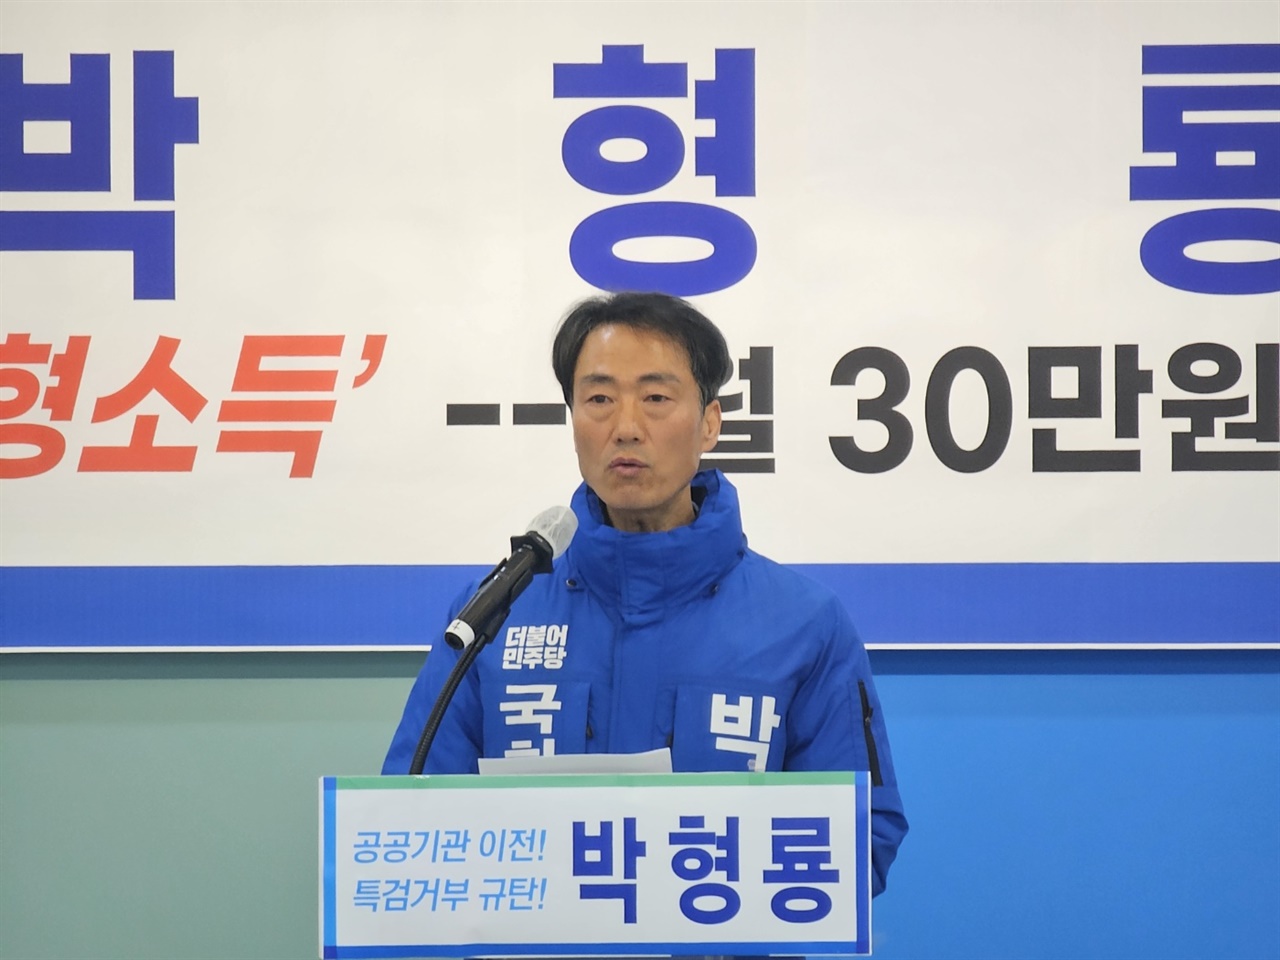 기자회견 하여 1호 핵심공약을 발표하는 박형룡 예비후보
